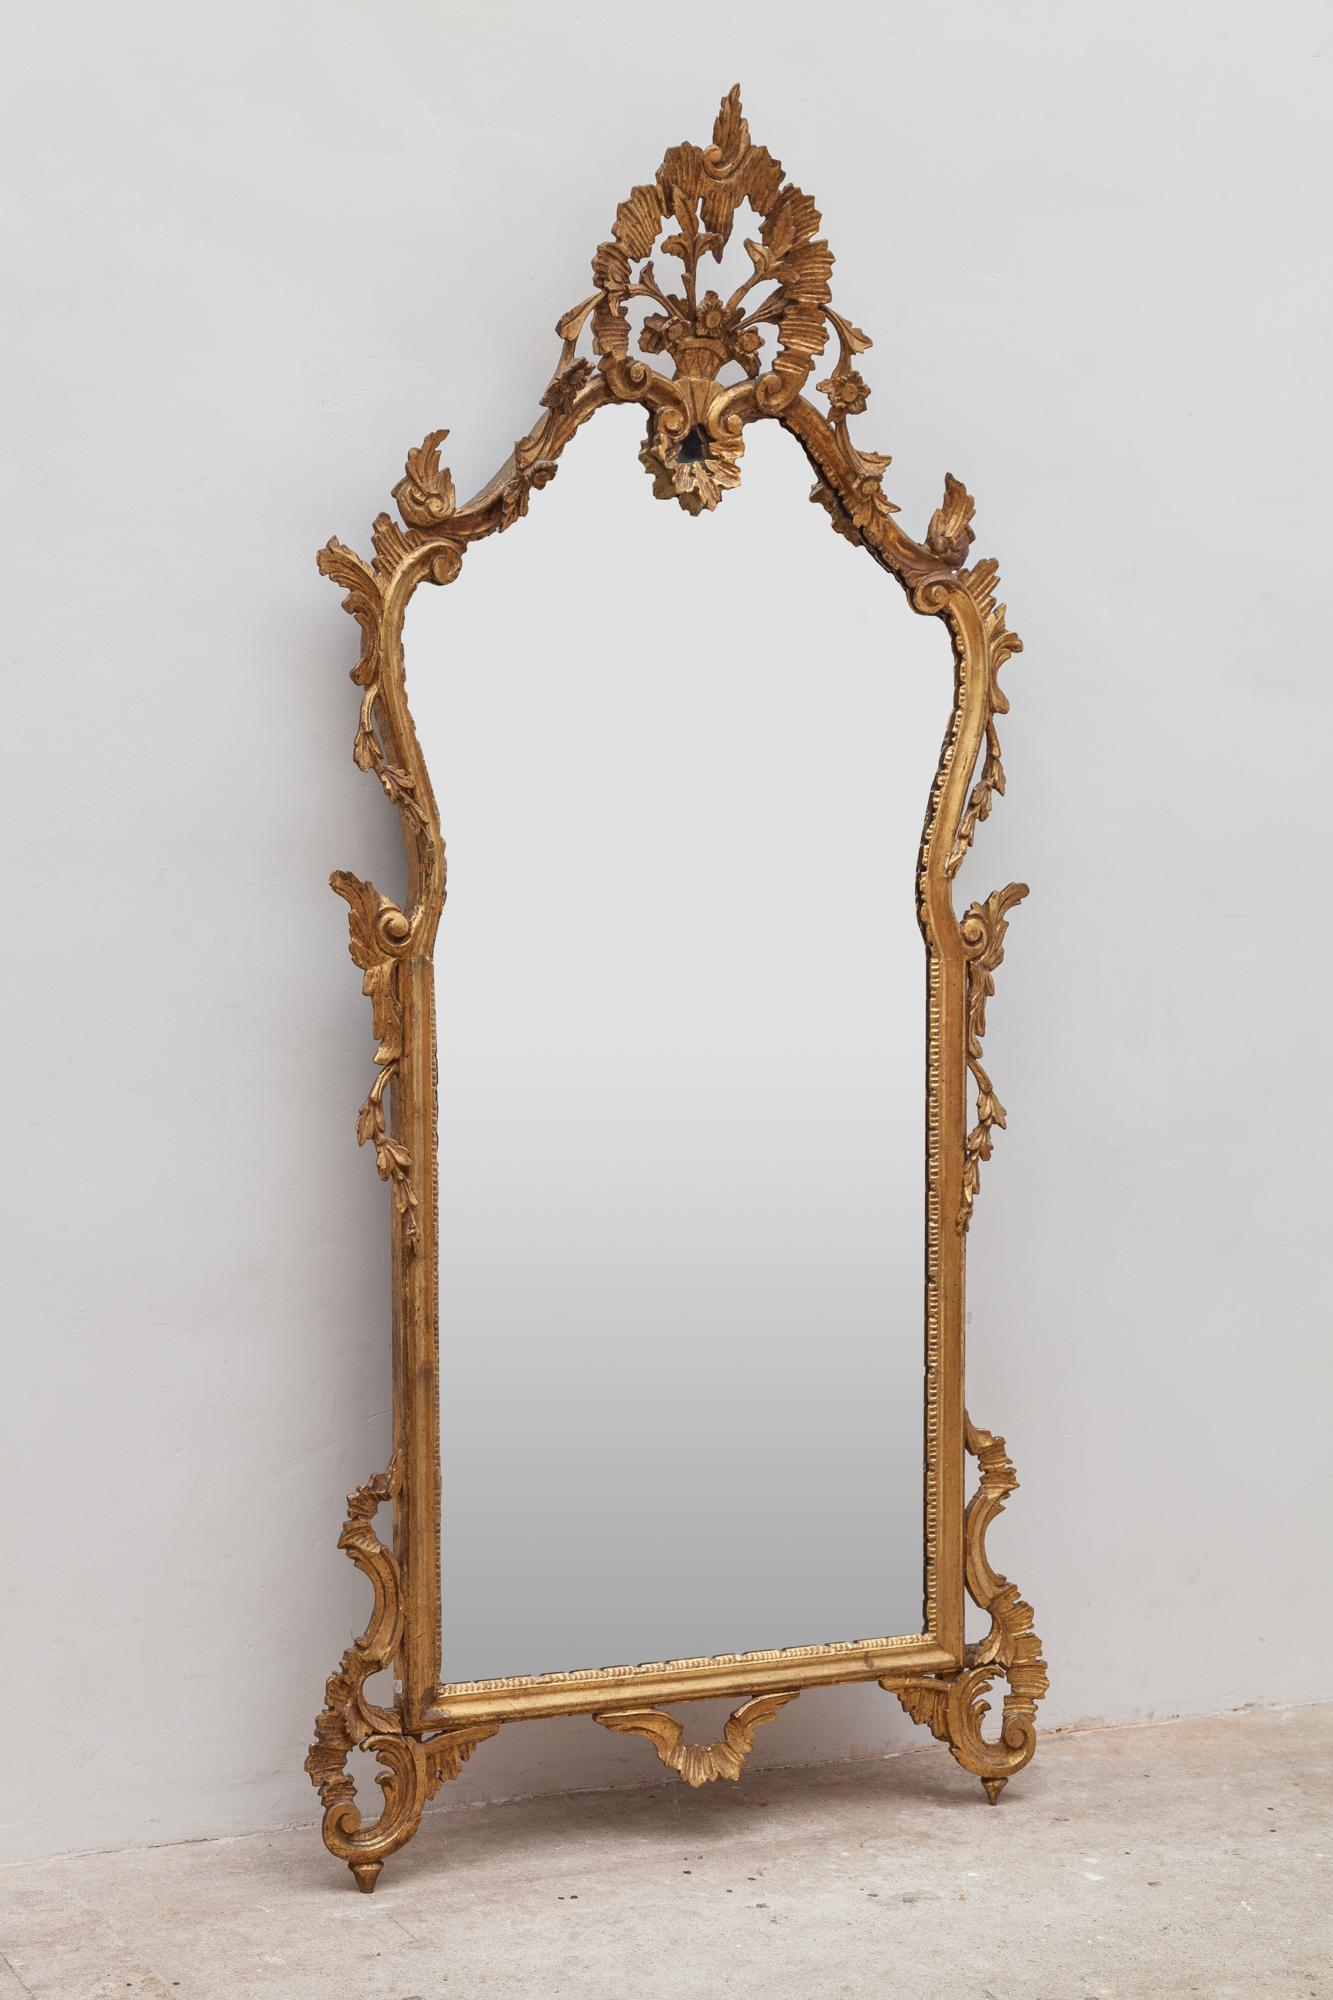 Espejo del siglo XIX de estilo rococó, marco dorado que representa una cesta de flores. El espejo está en excelentes condiciones, sin arañazos en el cristal.
El espejo rococó revival francés de 1860 iluminará maravillosamente cualquier espacio.